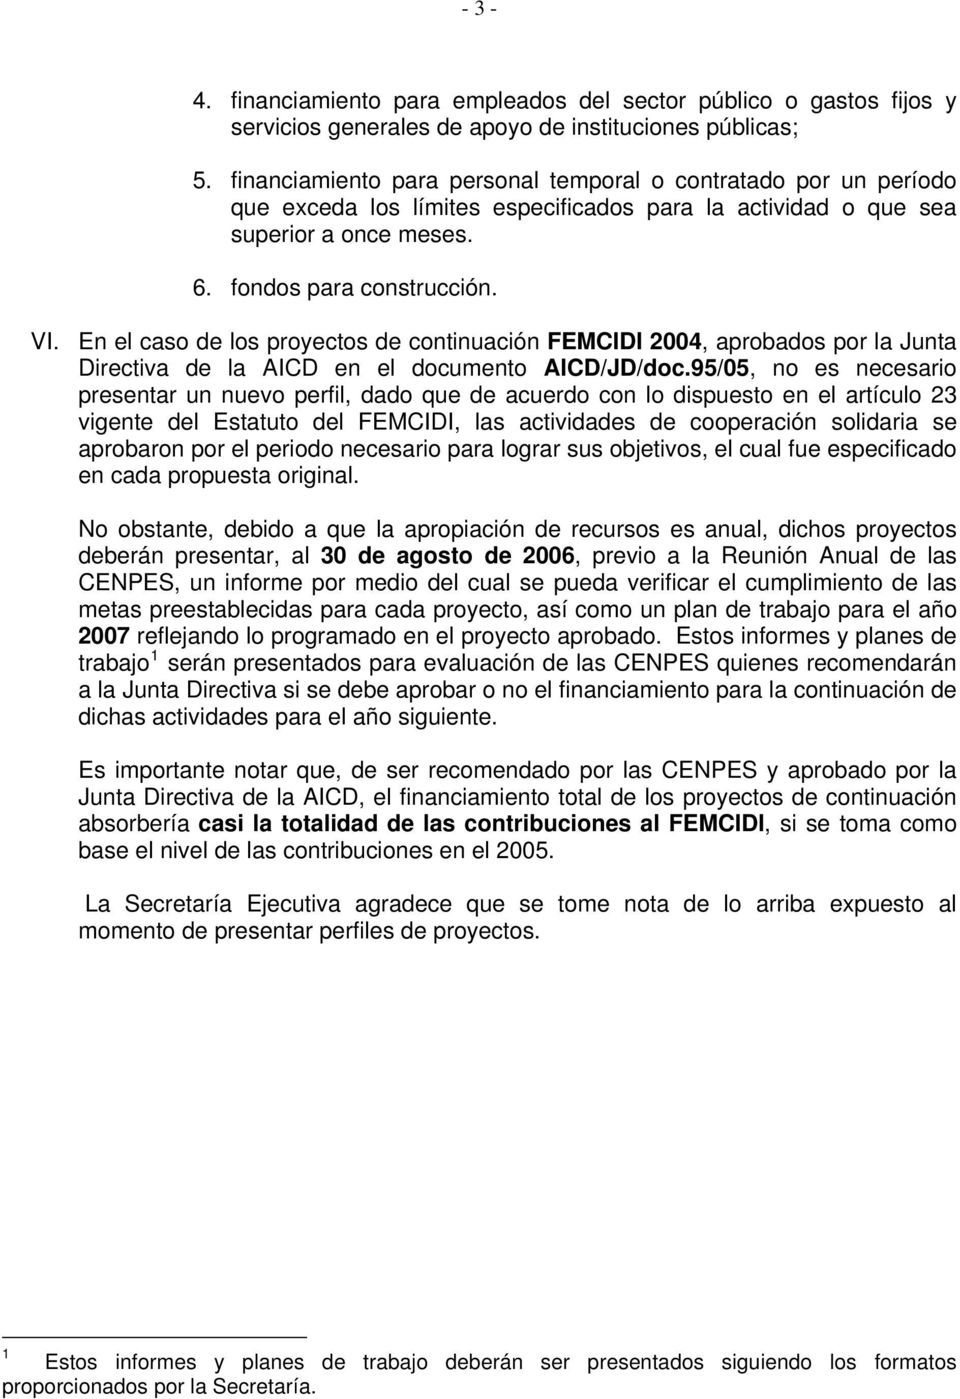 En el caso de los proyectos de continuación FEMCIDI 2004, aprobados por la Junta Directiva de la AICD en el documento AICD/JD/doc.